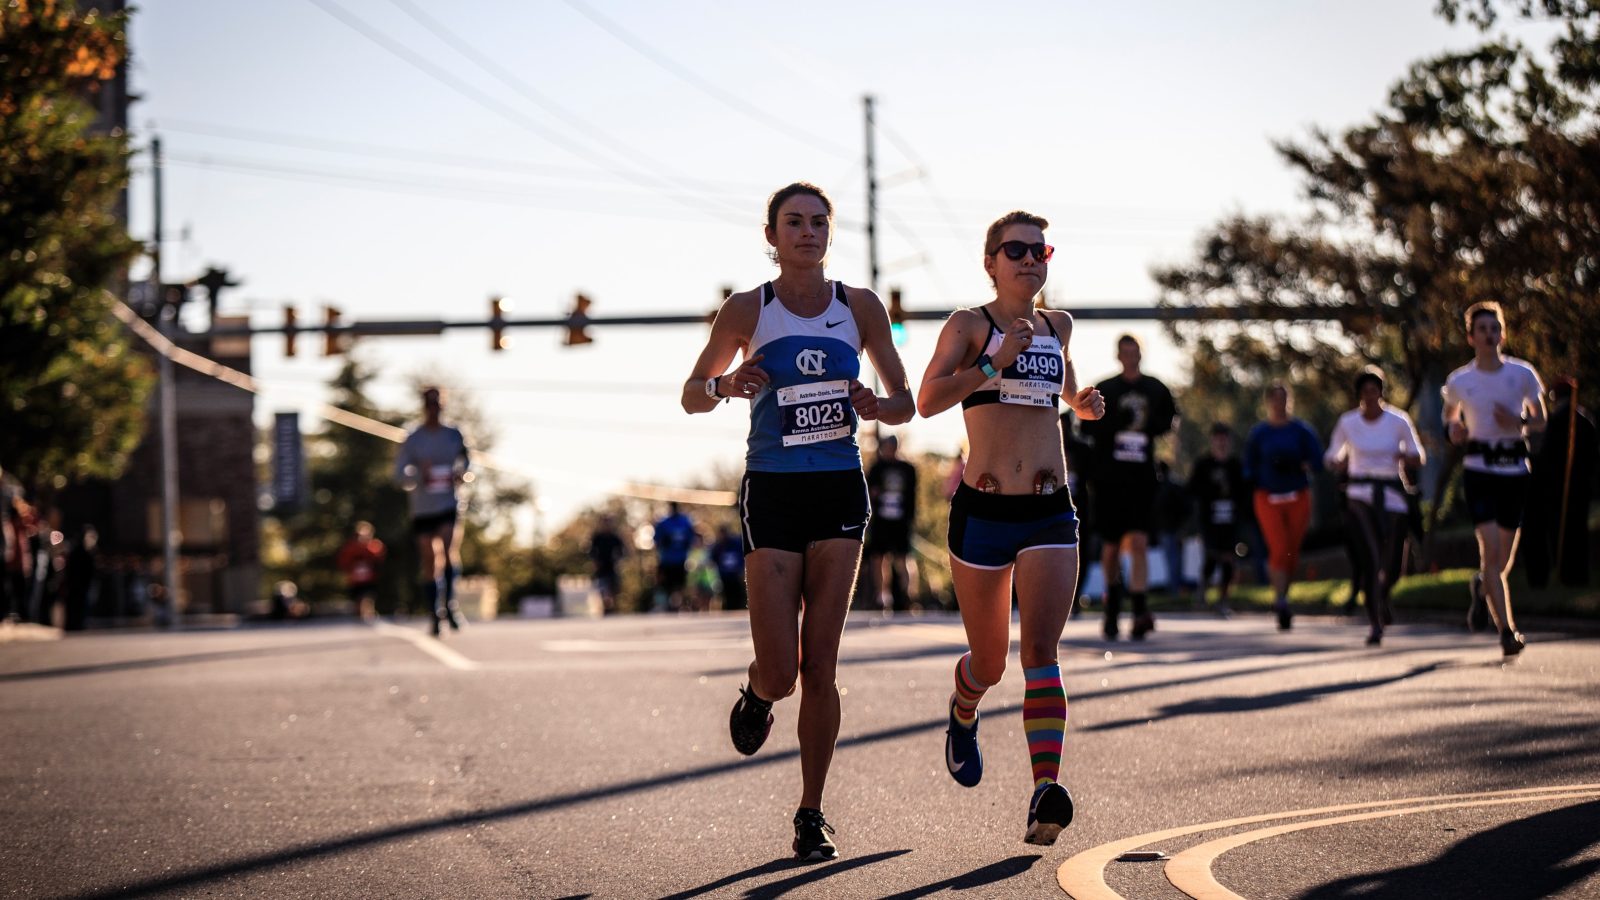 Allenarsi per la maratona – distanza e allenamenti settimanali 